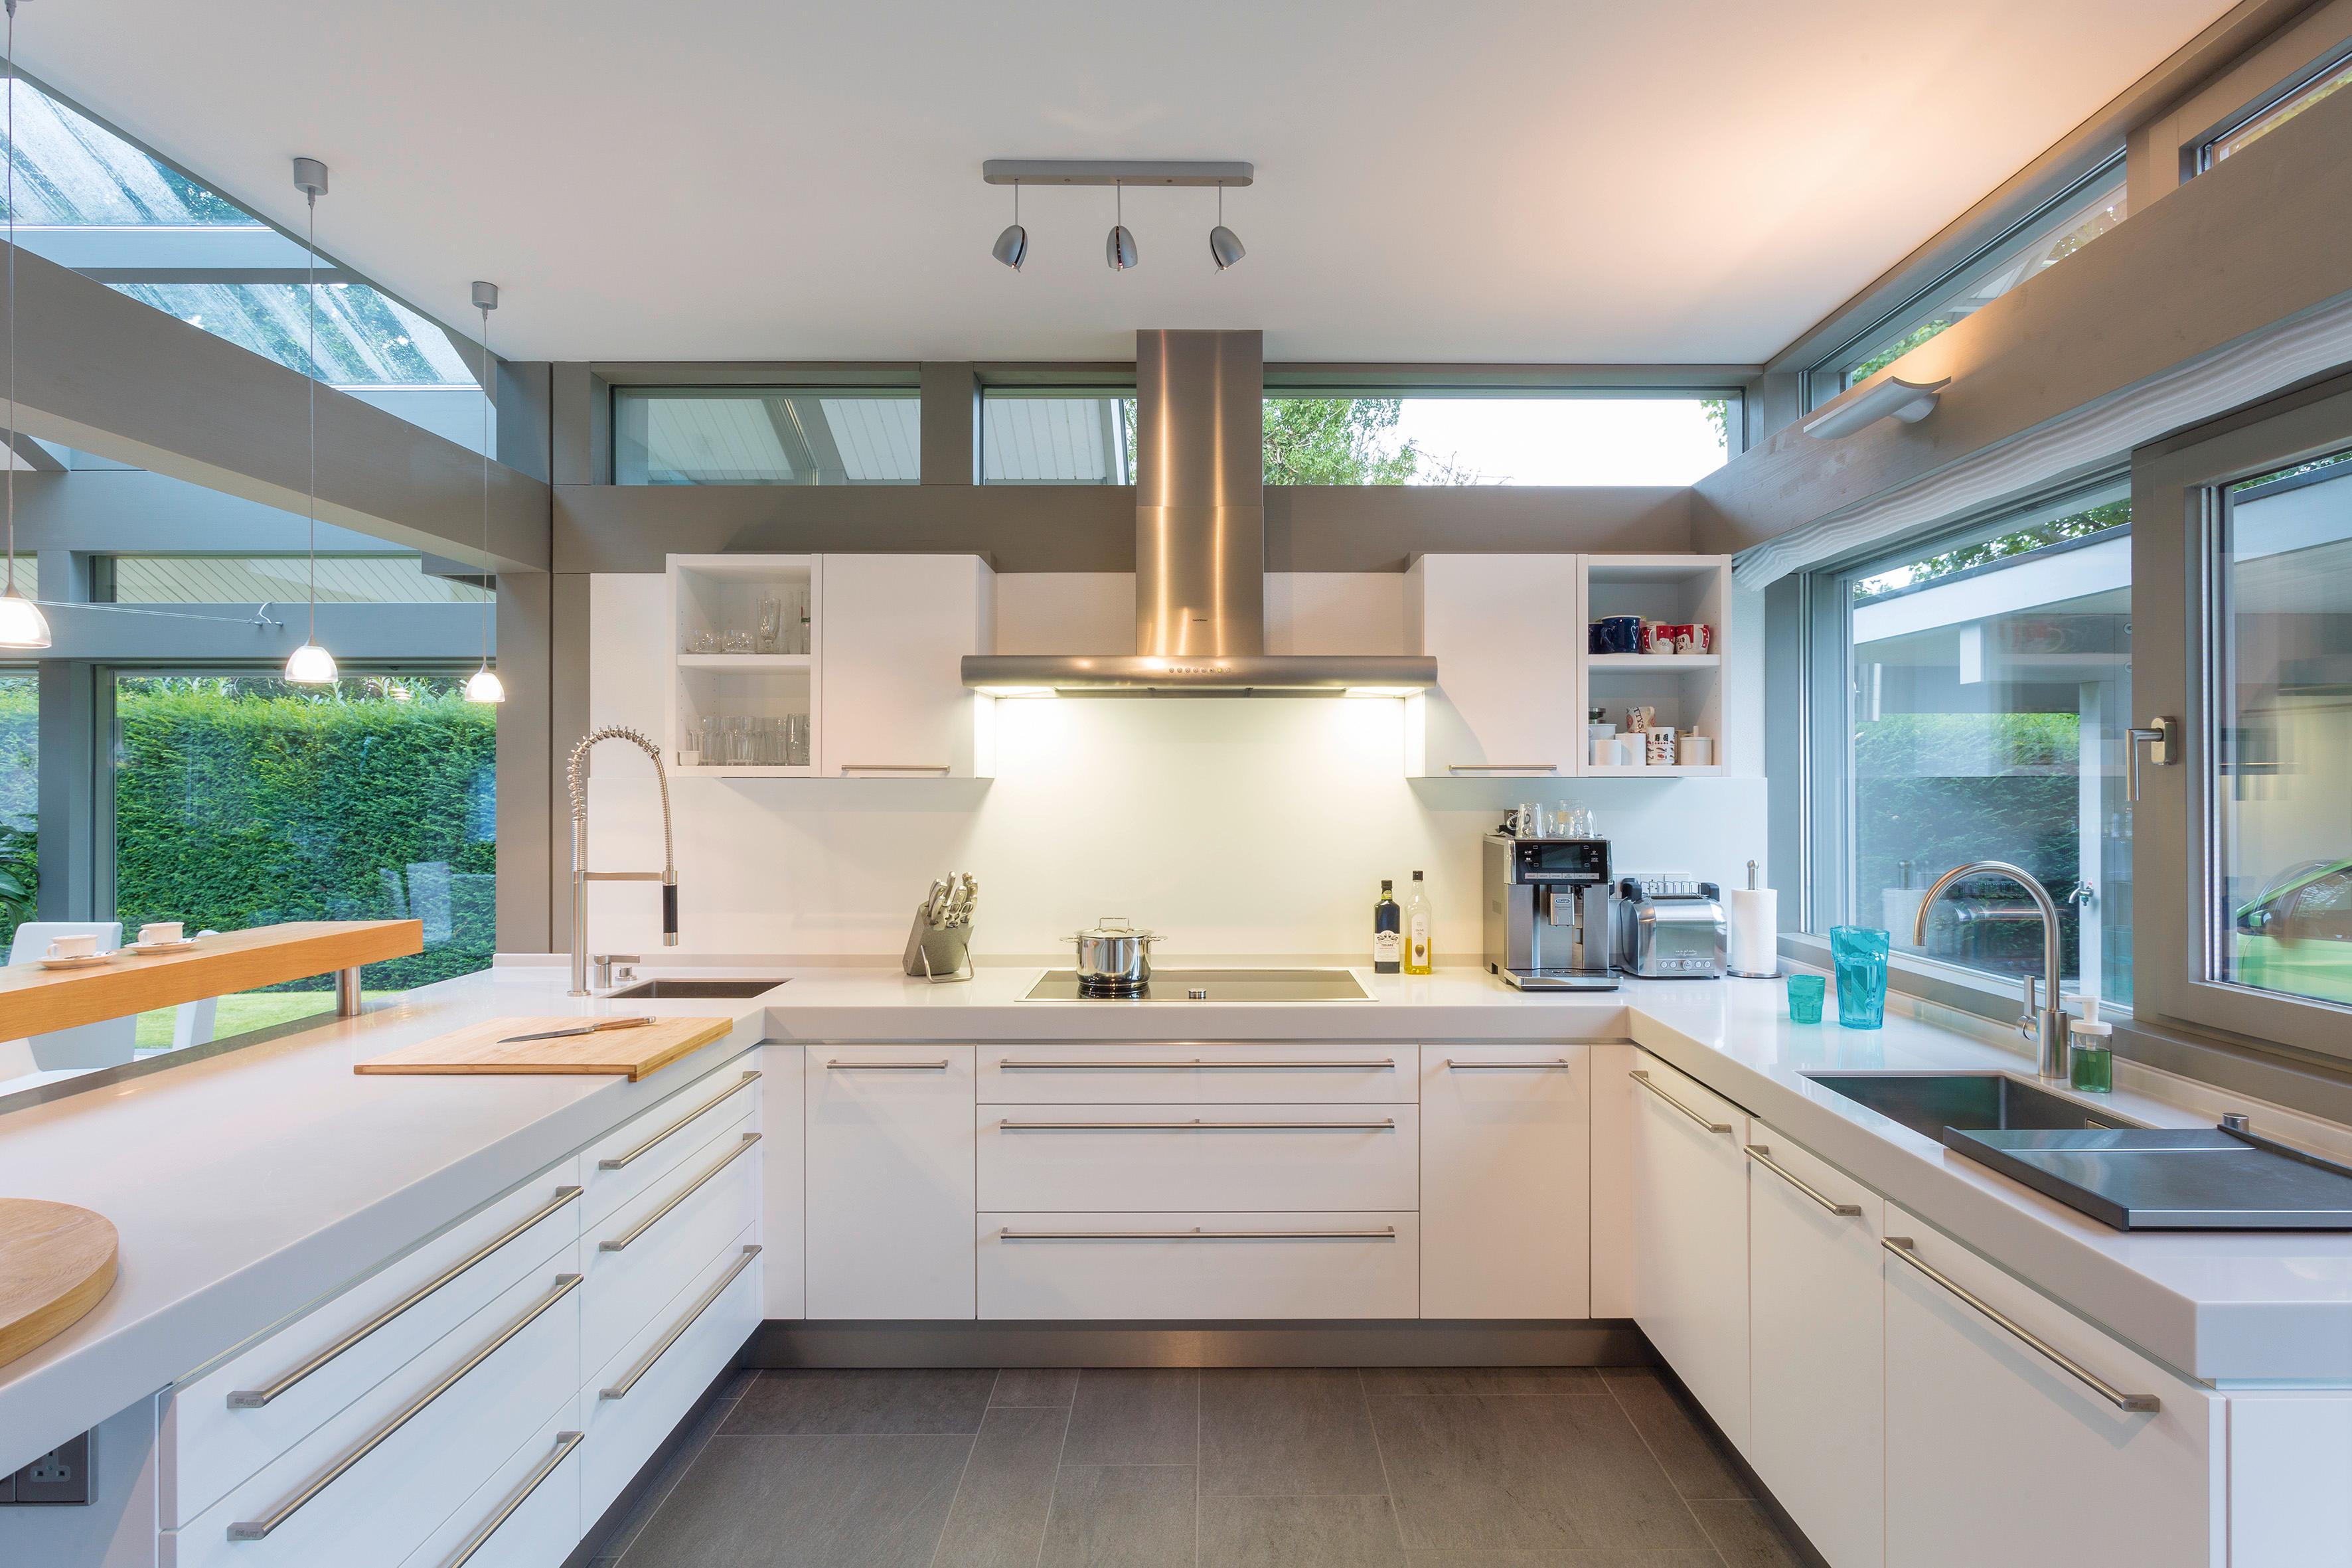 Helle Küche #küche #balken #weißeküche #küchenschrank #designhaus #weißerküchenschrank #küchenspüle ©HUF HAUS